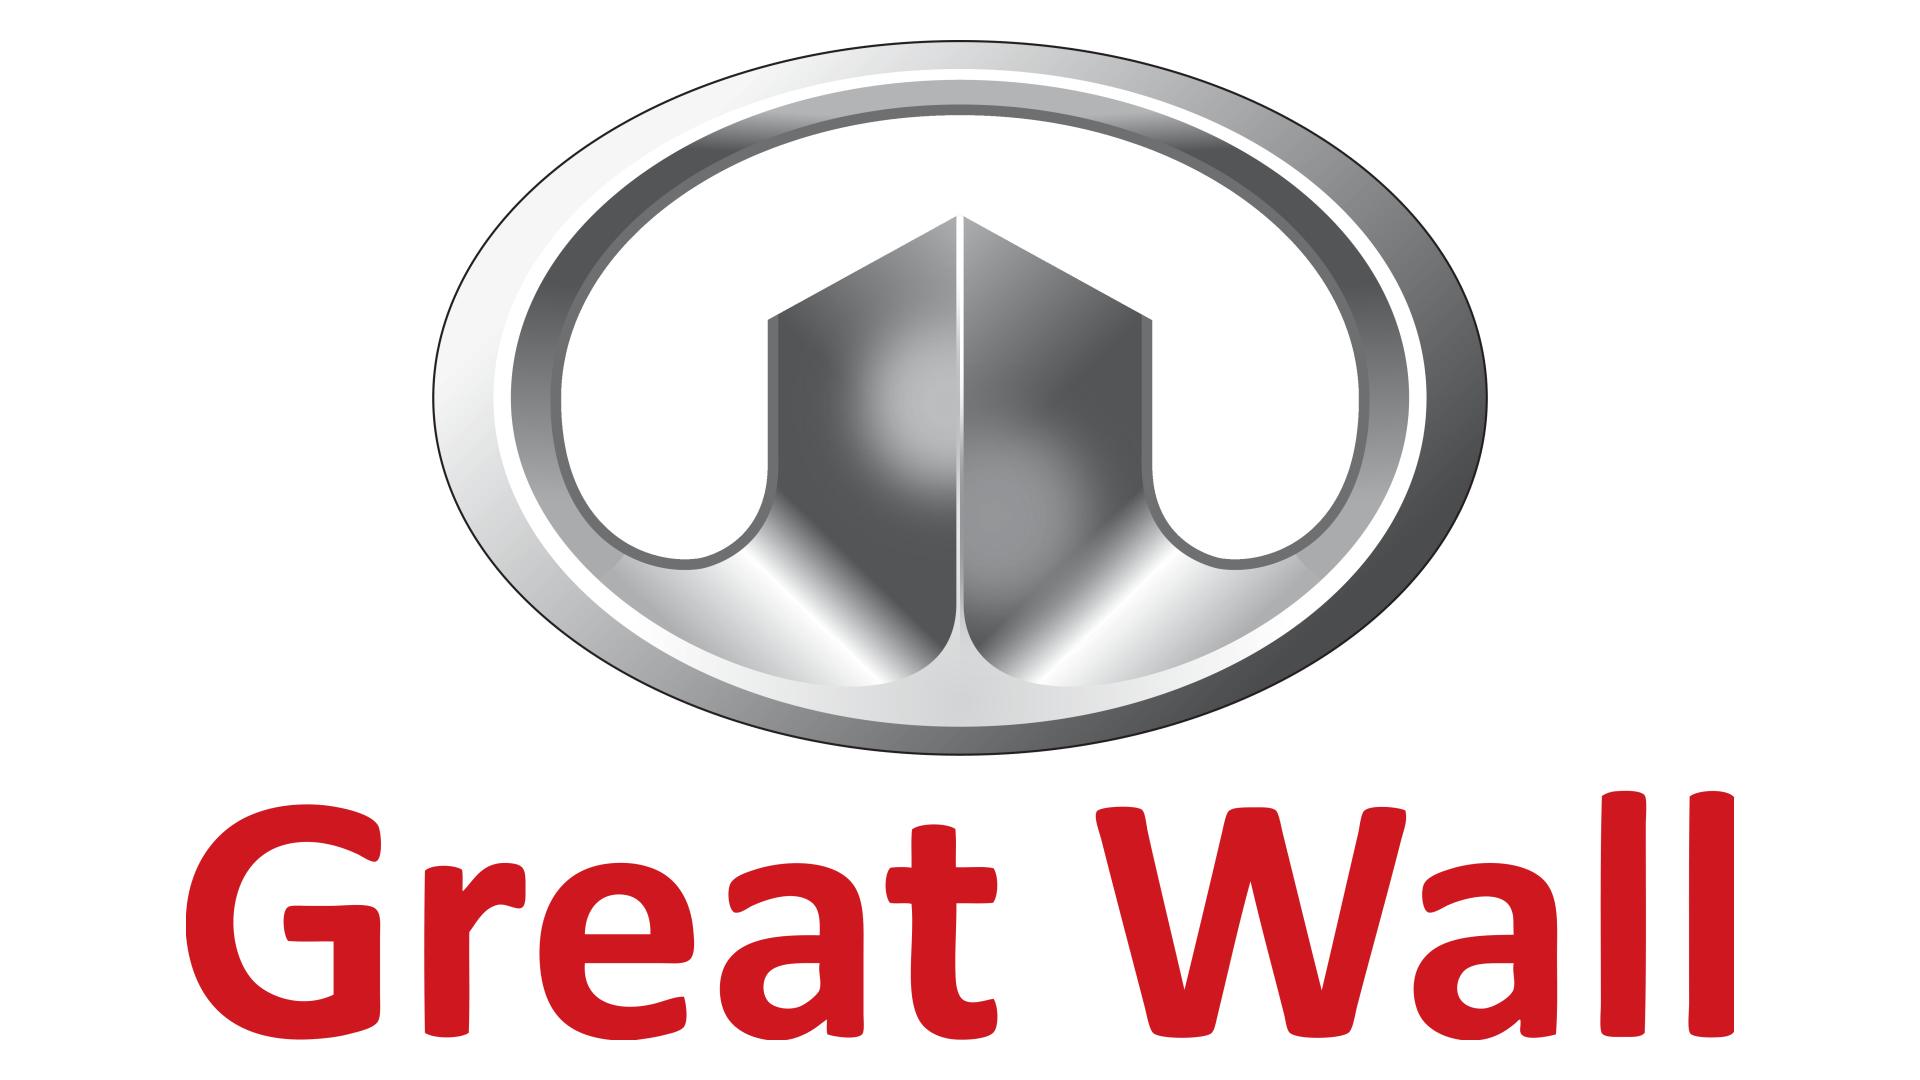 Логотип Great Wall